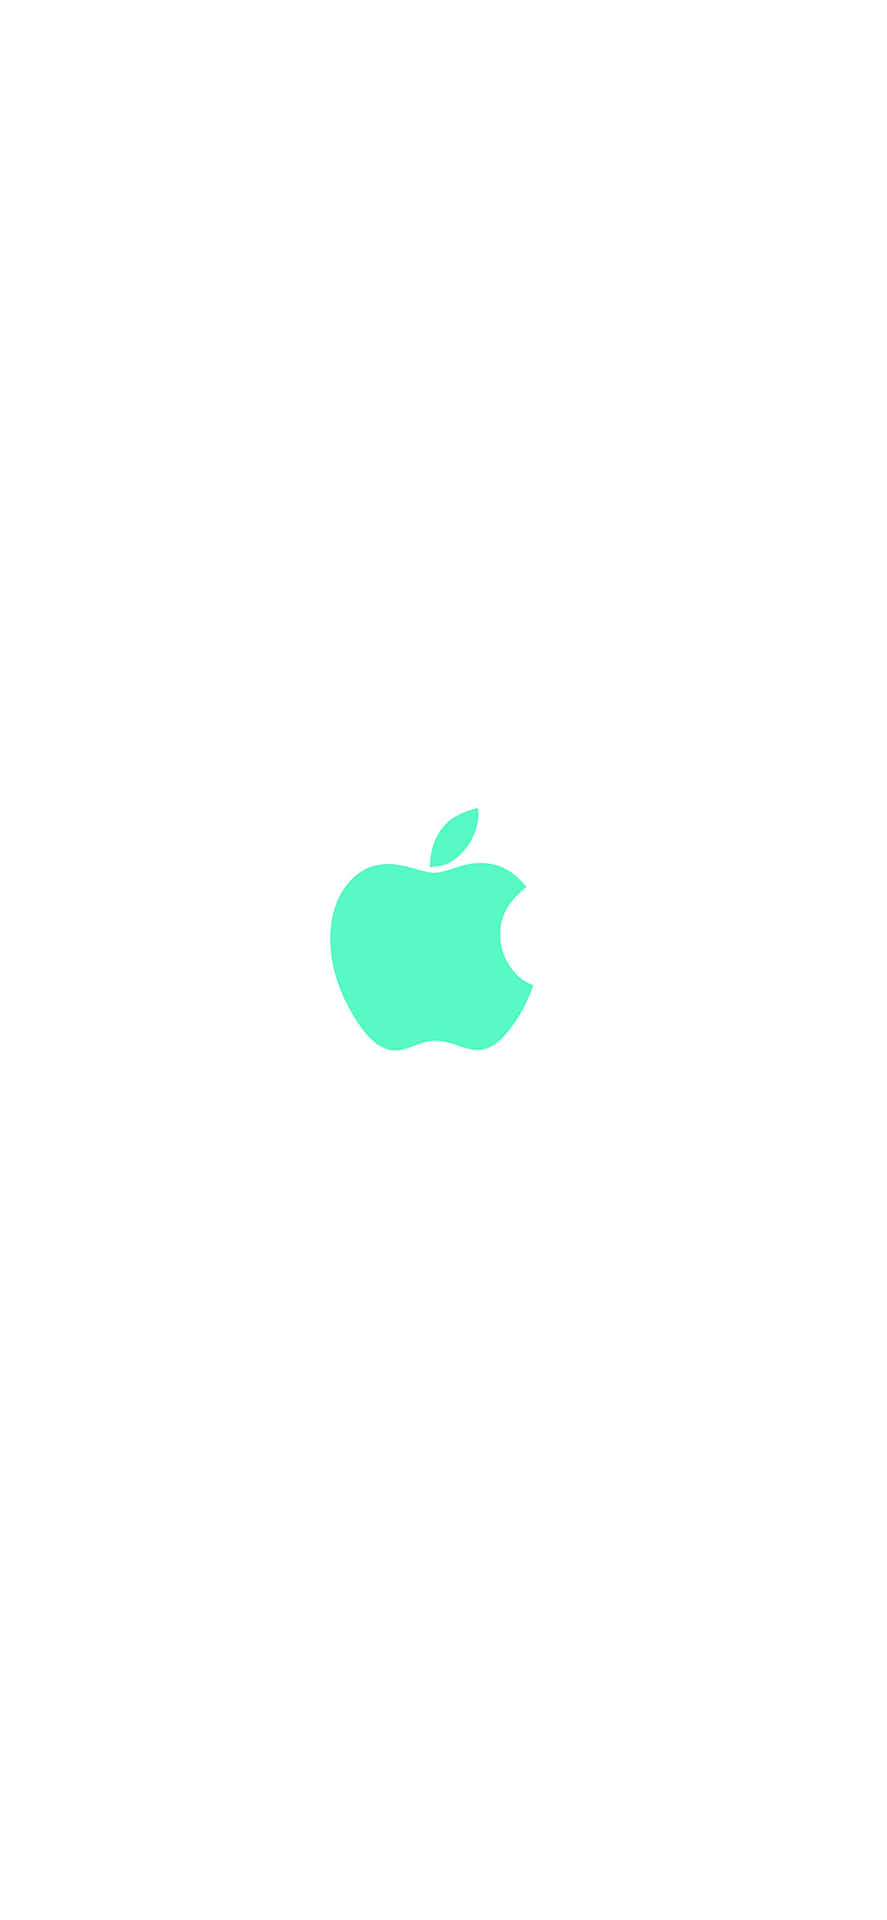 Logotipode La Manzana Verde En El Iphone 11 Fondo de pantalla